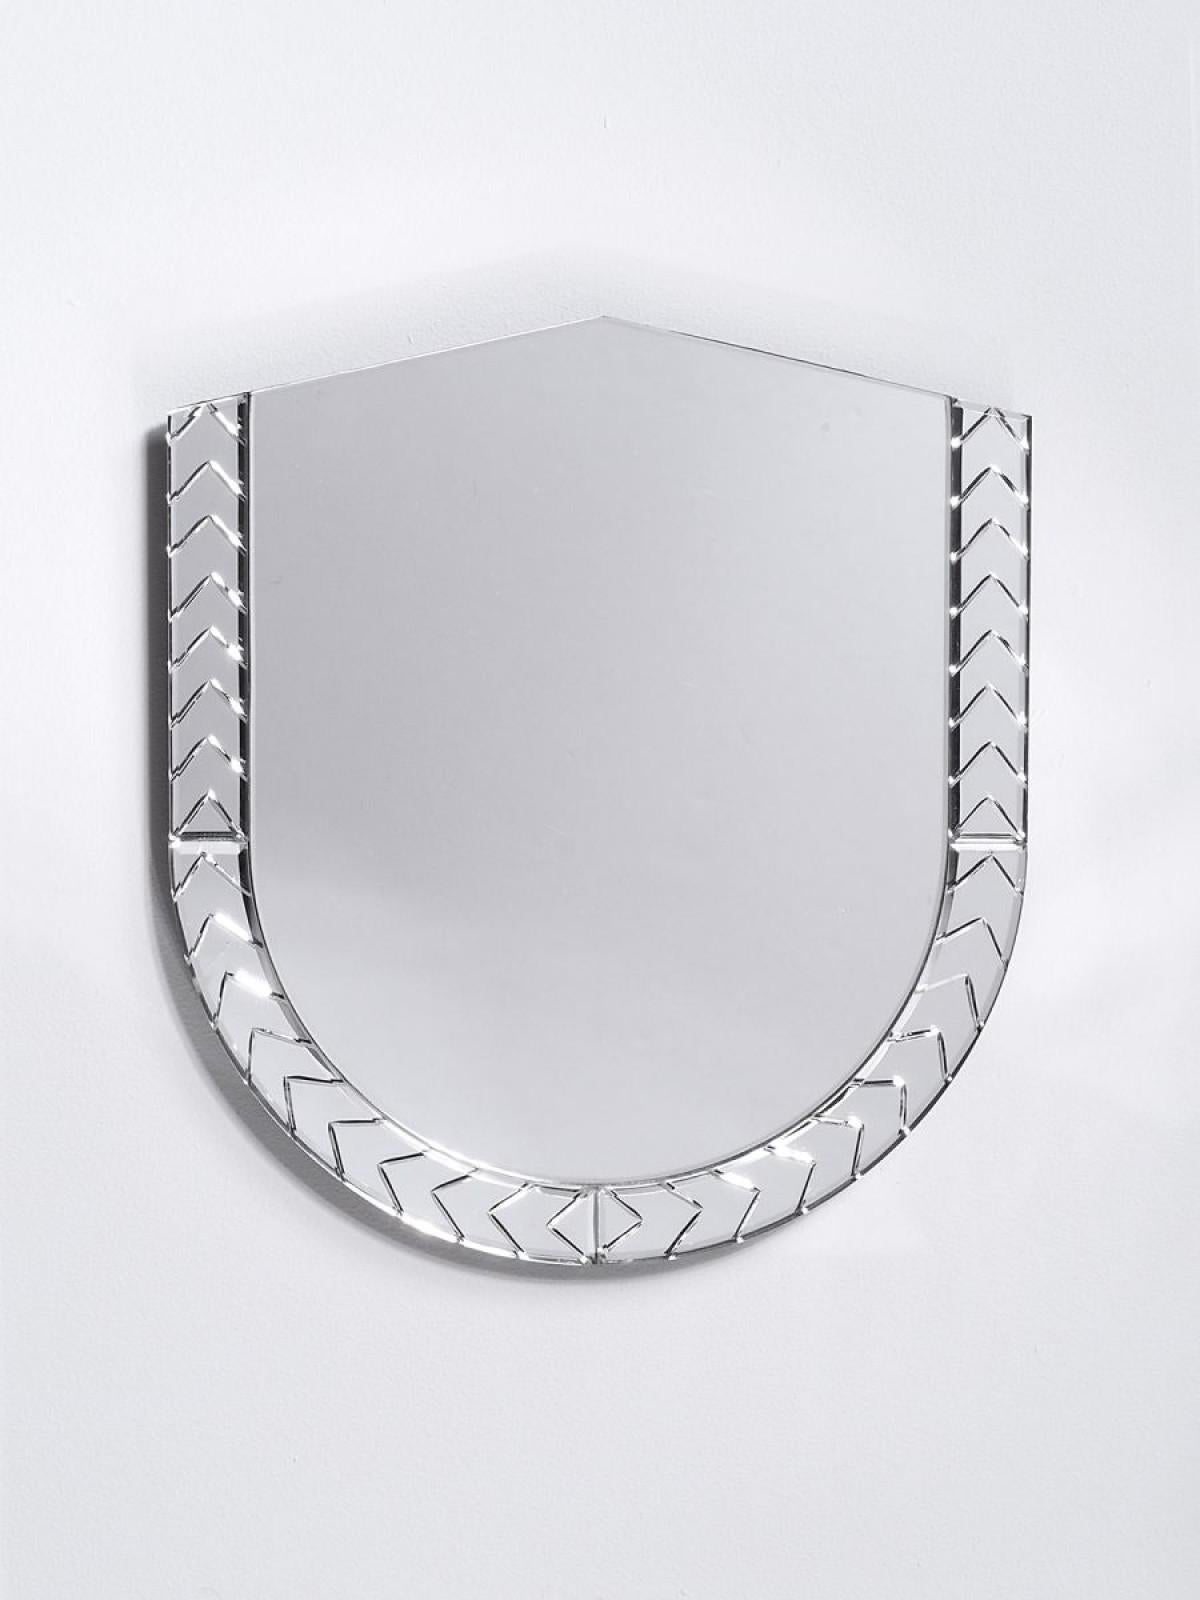 Miroir Scena Elemento Due Murano par Nikolai Kotlarczyk
Dimensions : D 3 x L 30 x H 30 cm 
Matériaux : verre sculpté argenté, dos en bois gris foncé. 
Également disponible dans d'autres designs et dimensions. Veuillez nous contacter pour plus